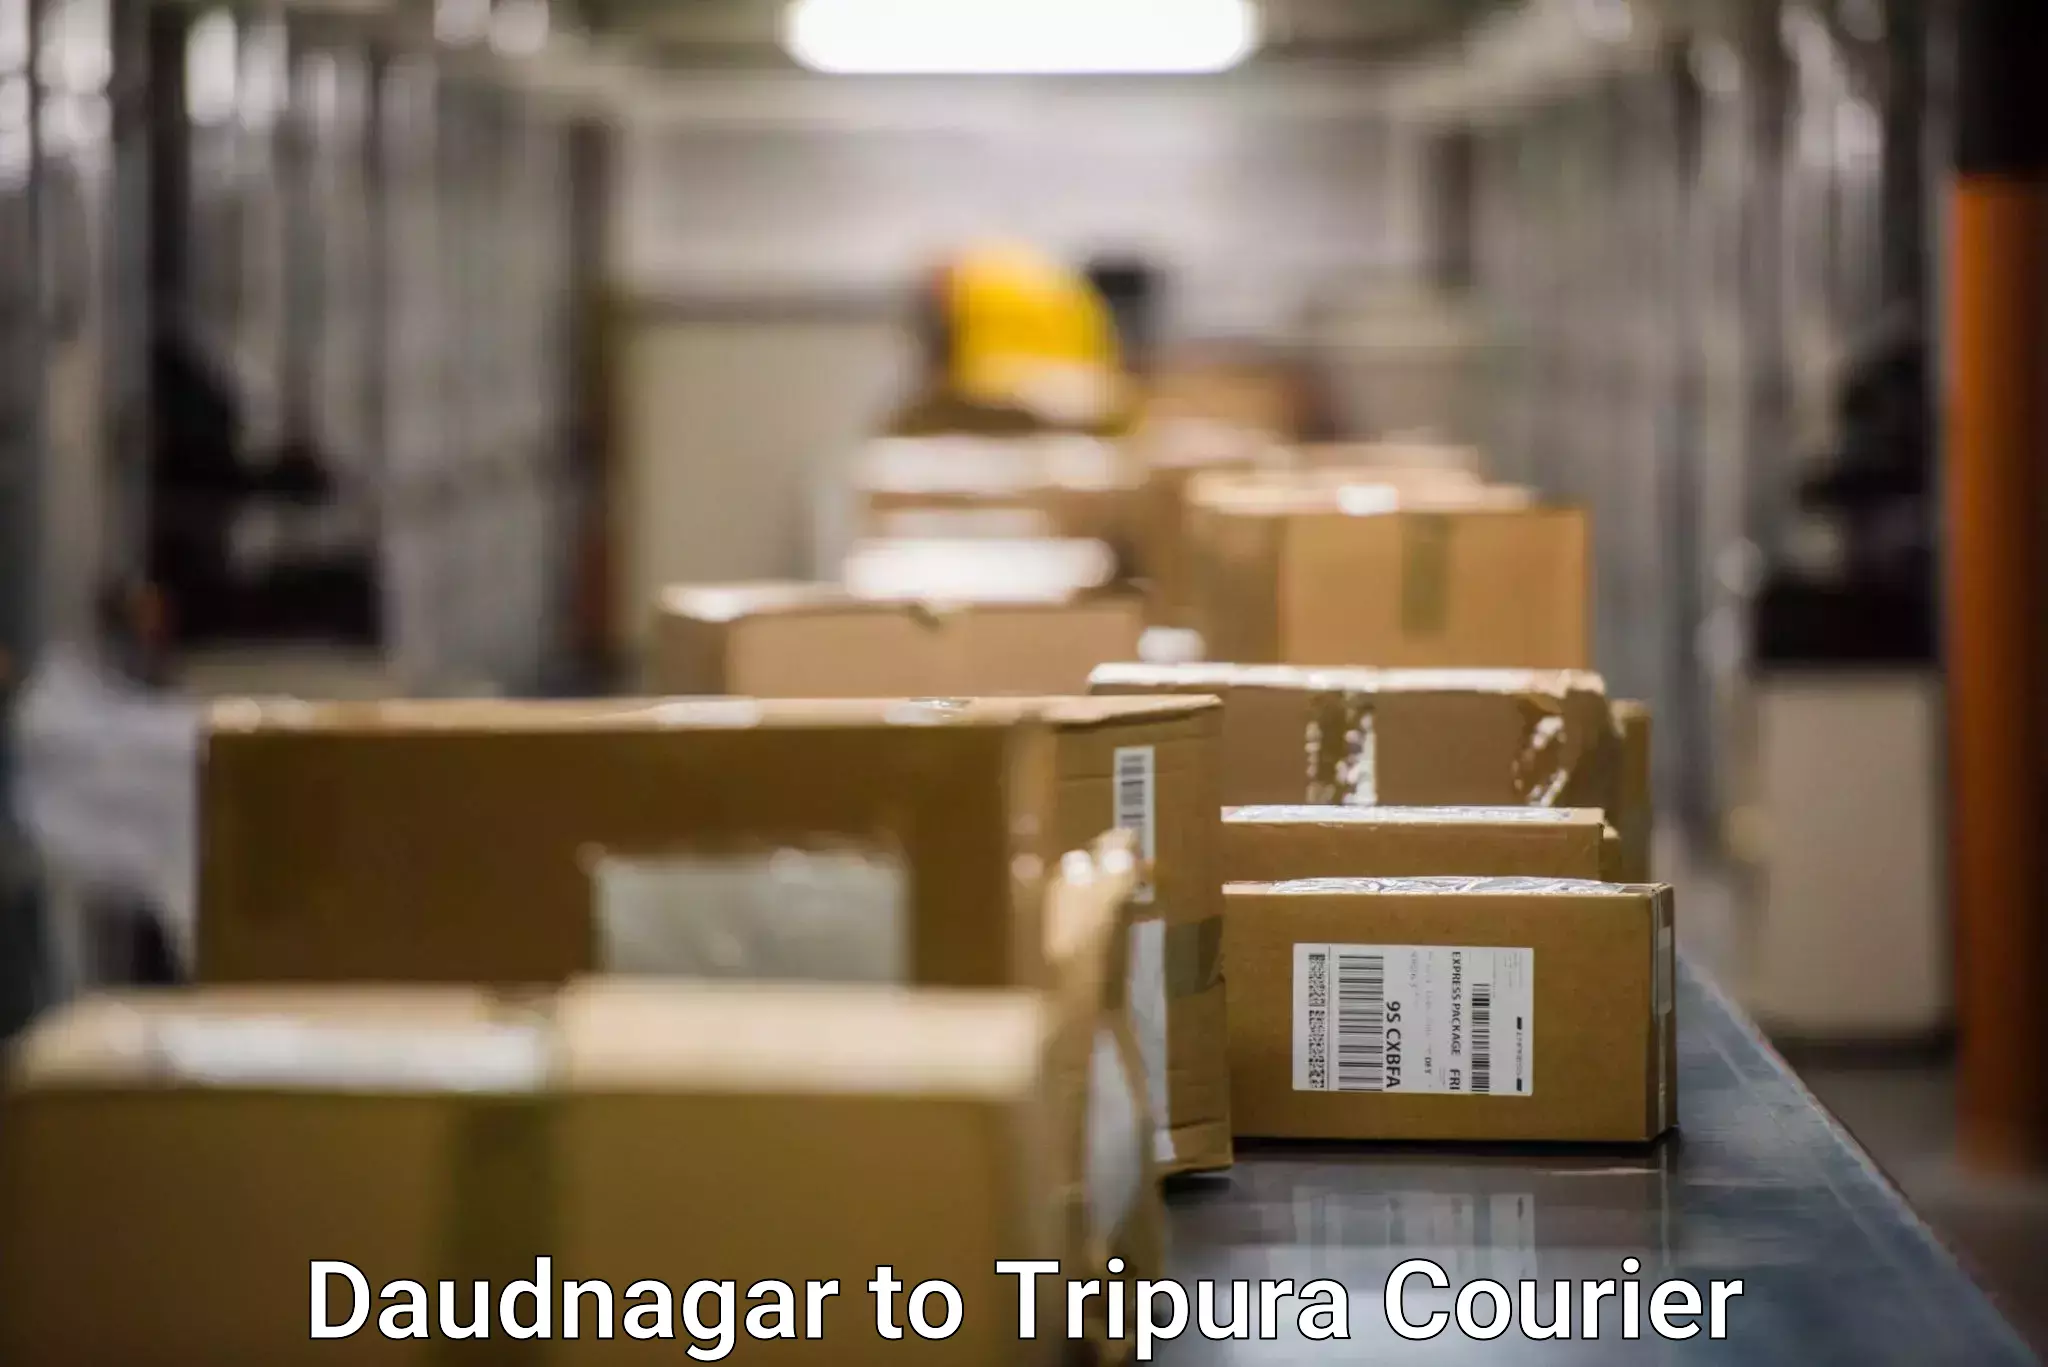 Express package handling Daudnagar to Agartala